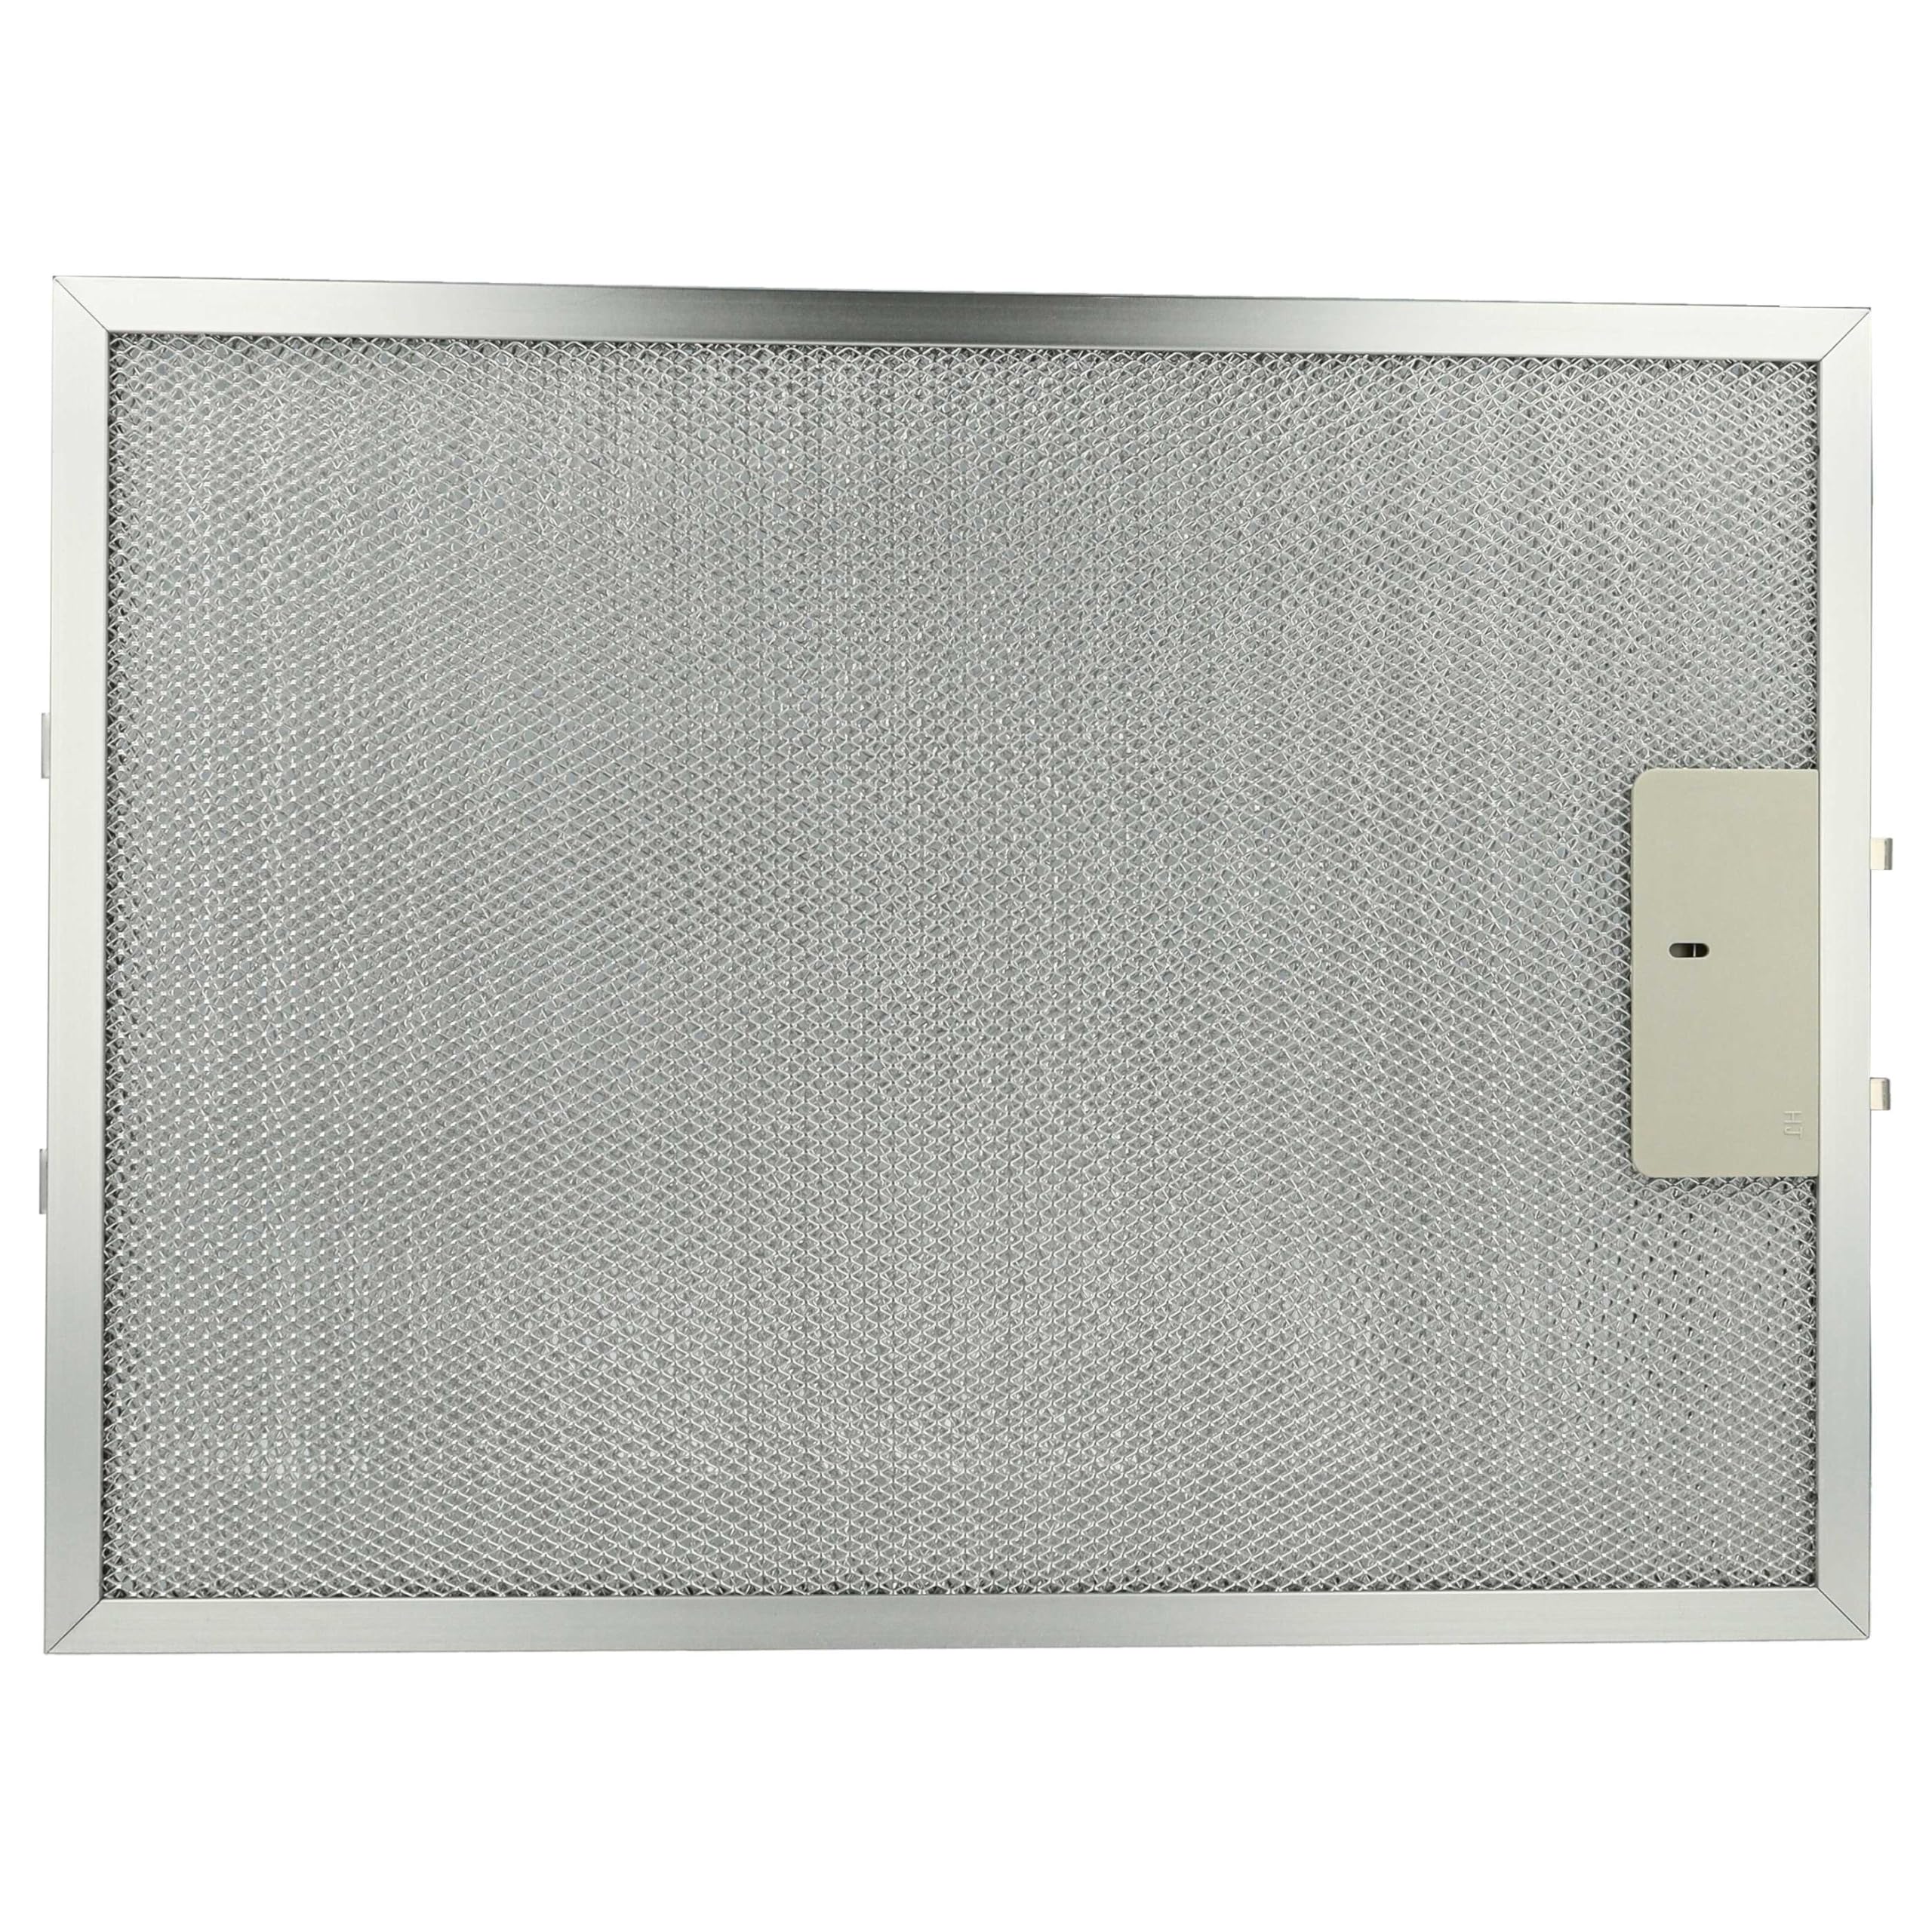 vhbw Filter Metallfettfilter Dauerfilter kompatibel mit AEG DUB 2610 W 94215069700 Dunstabzugshaube - 38 x 28,3 x 0,9 cm, Metall